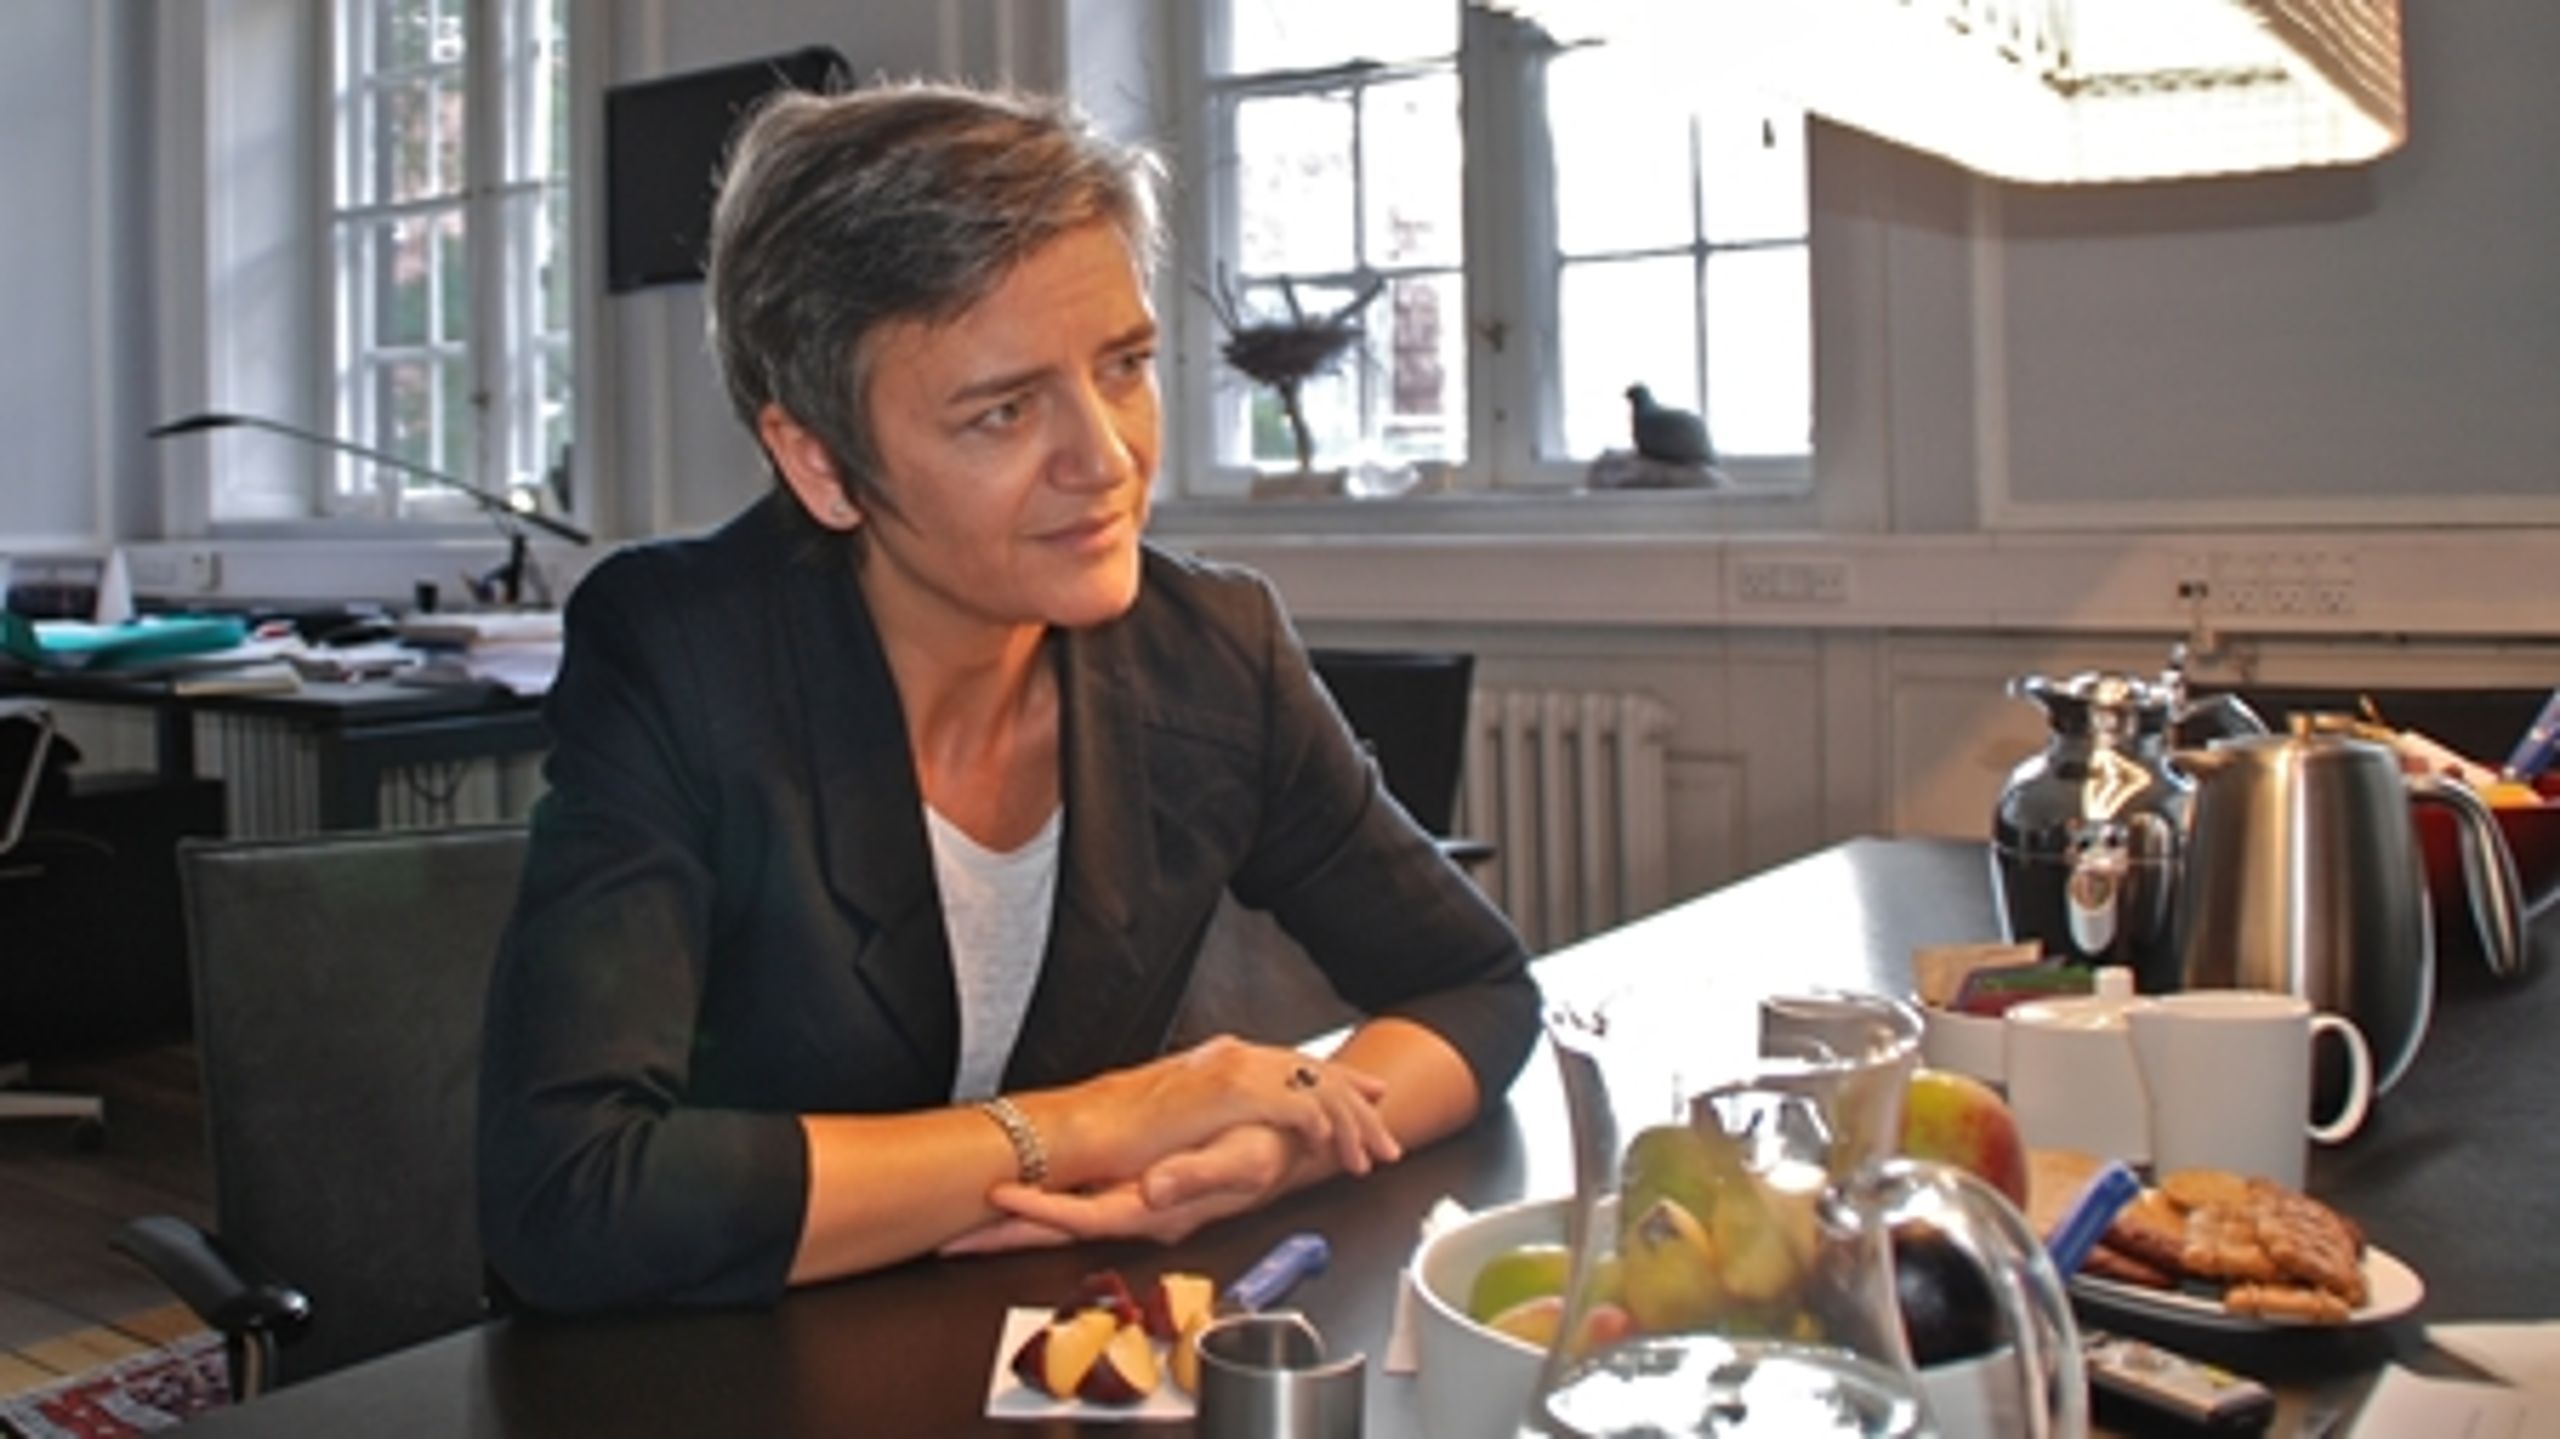 Radikale og Margrethe Vestager har satset hårdt på at få et stærkt Økonomiministerium.